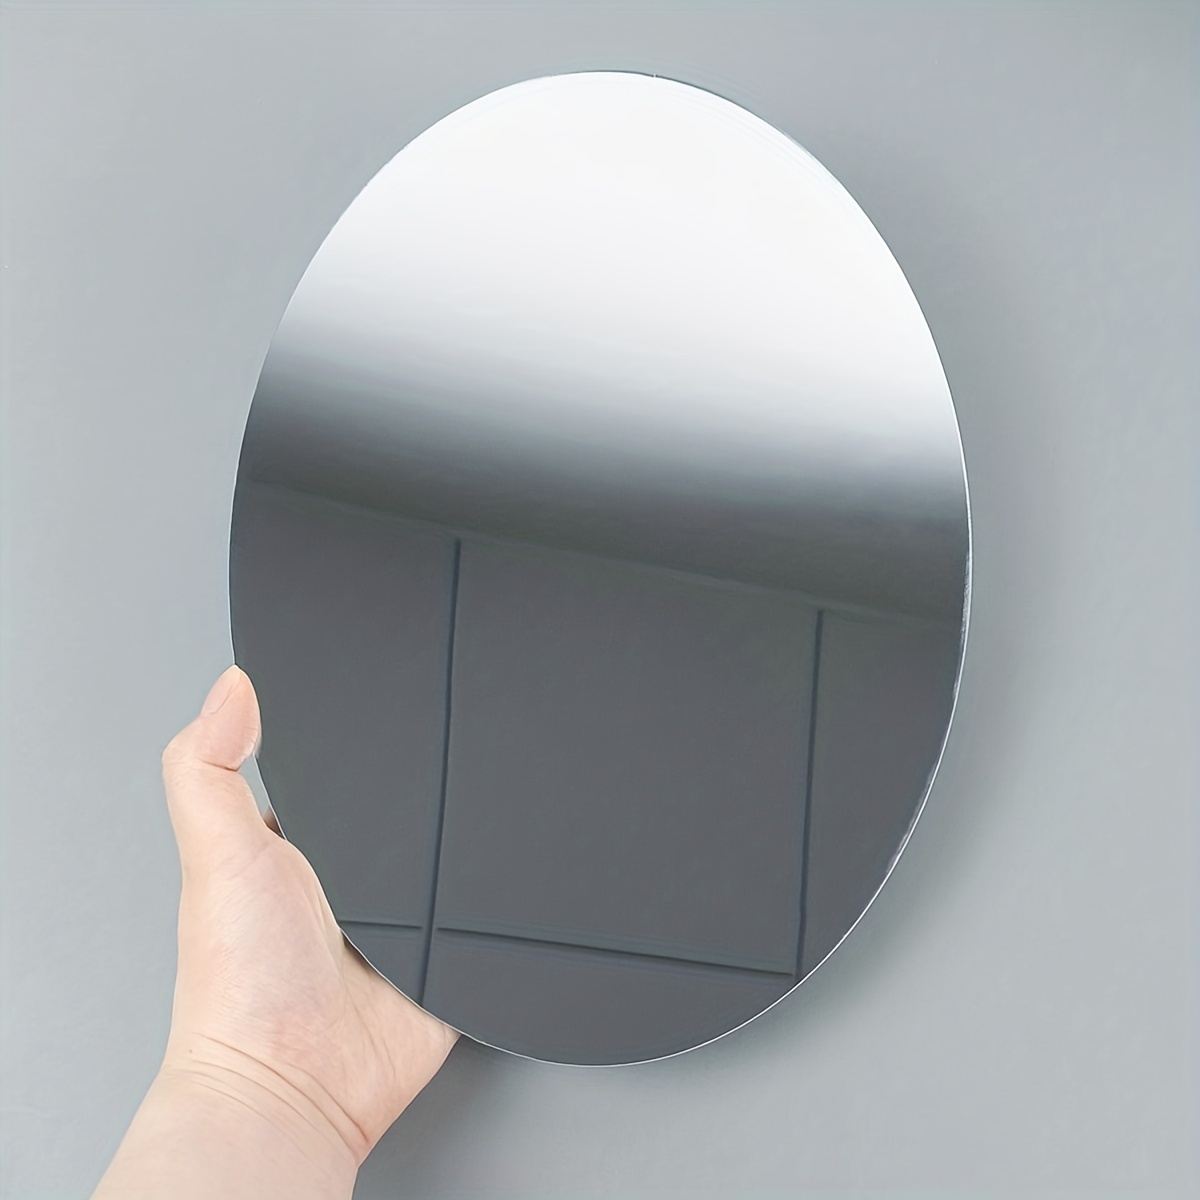  xixi-home Adhesivos de pared con espejo acrílico extraíble,  adhesivo de pared autoadhesivo ondulado, espejo decorativo de pared, baño,  sala de estar, dormitorio, juego de espejo artístico de cristal (plata, 15  unidades) 